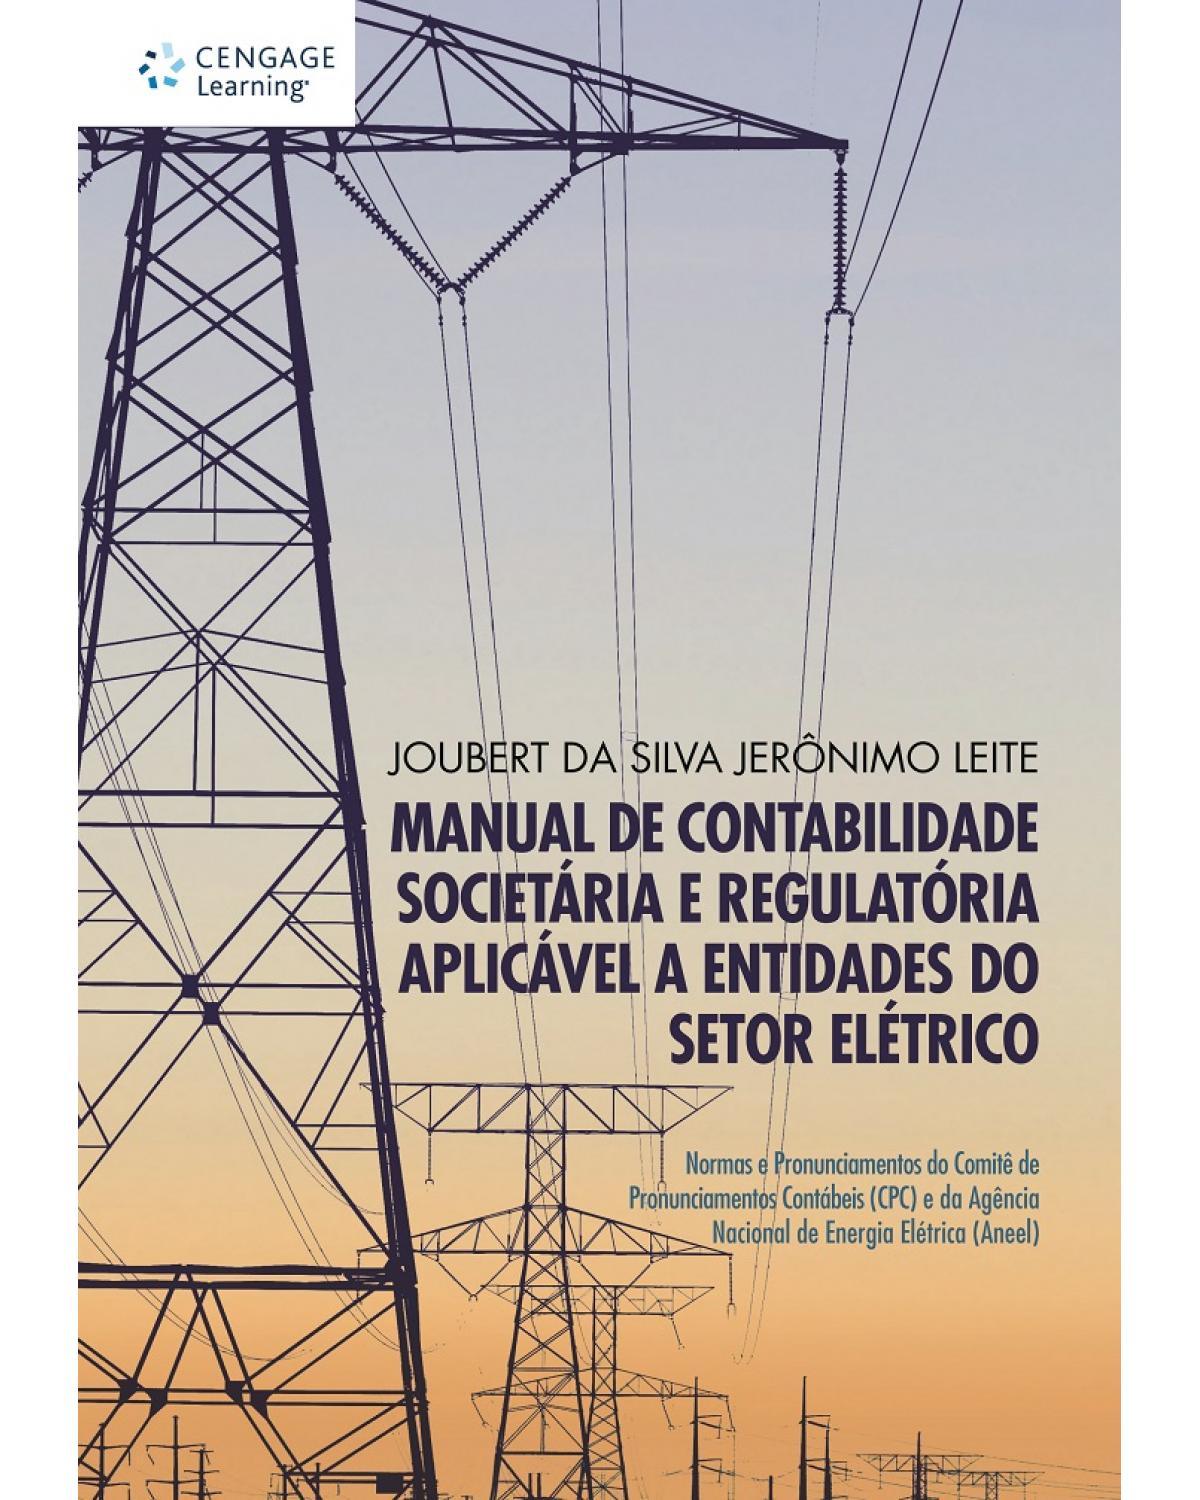 Manual de contabilidade societária e regulatória aplicável a entidades do setor elétrico - normas e pronunciamentos do Comitê de Pronunciamentos Contábeis (CPC) e da Agência Nacional de Energia Elétrica (Aneel) - 1ª Edição | 2013